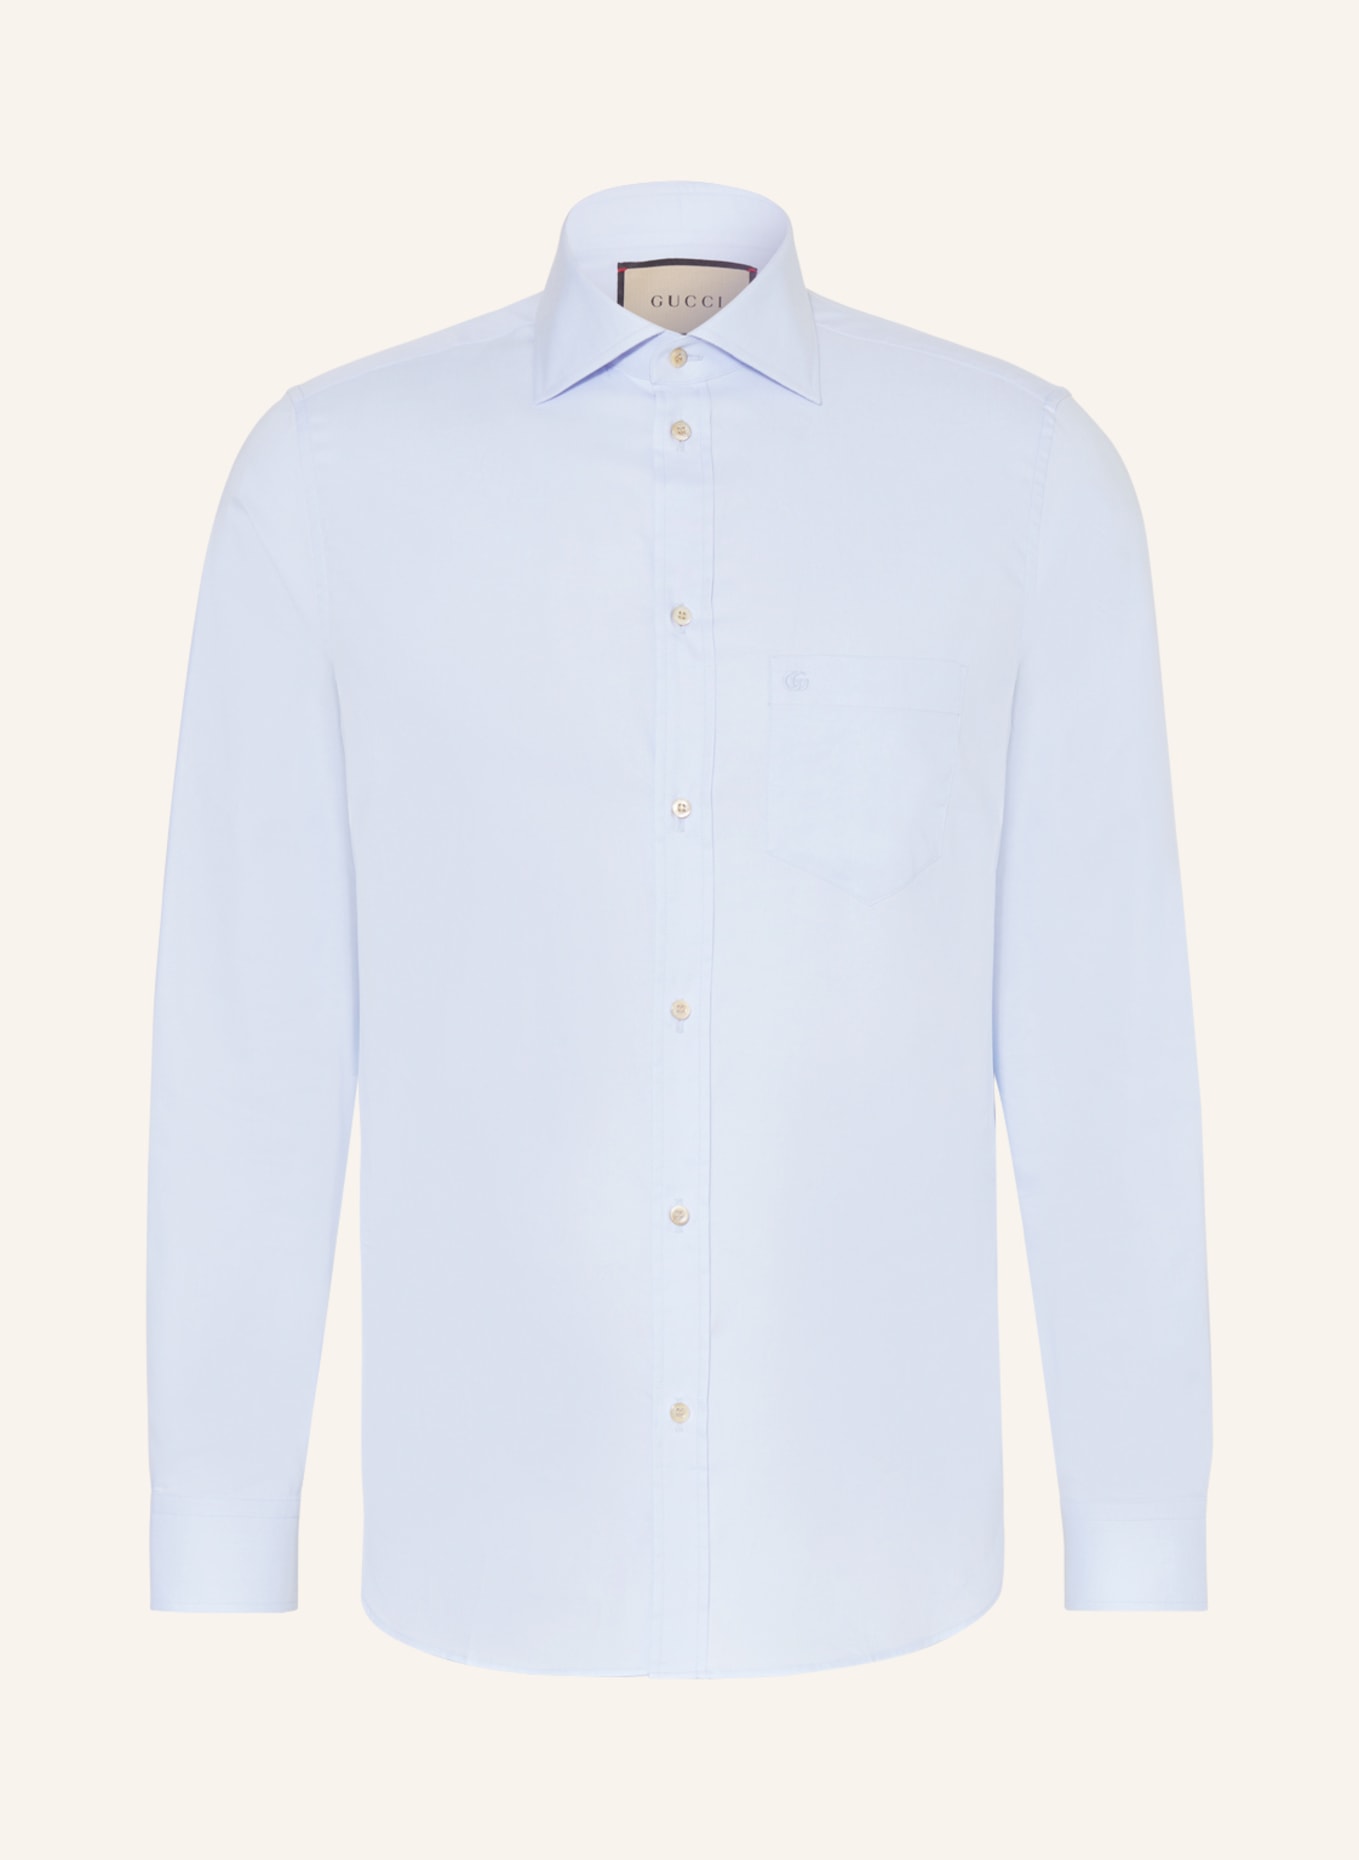 GUCCI Shirt regular fit, Color: LIGHT BLUE (Image 1)